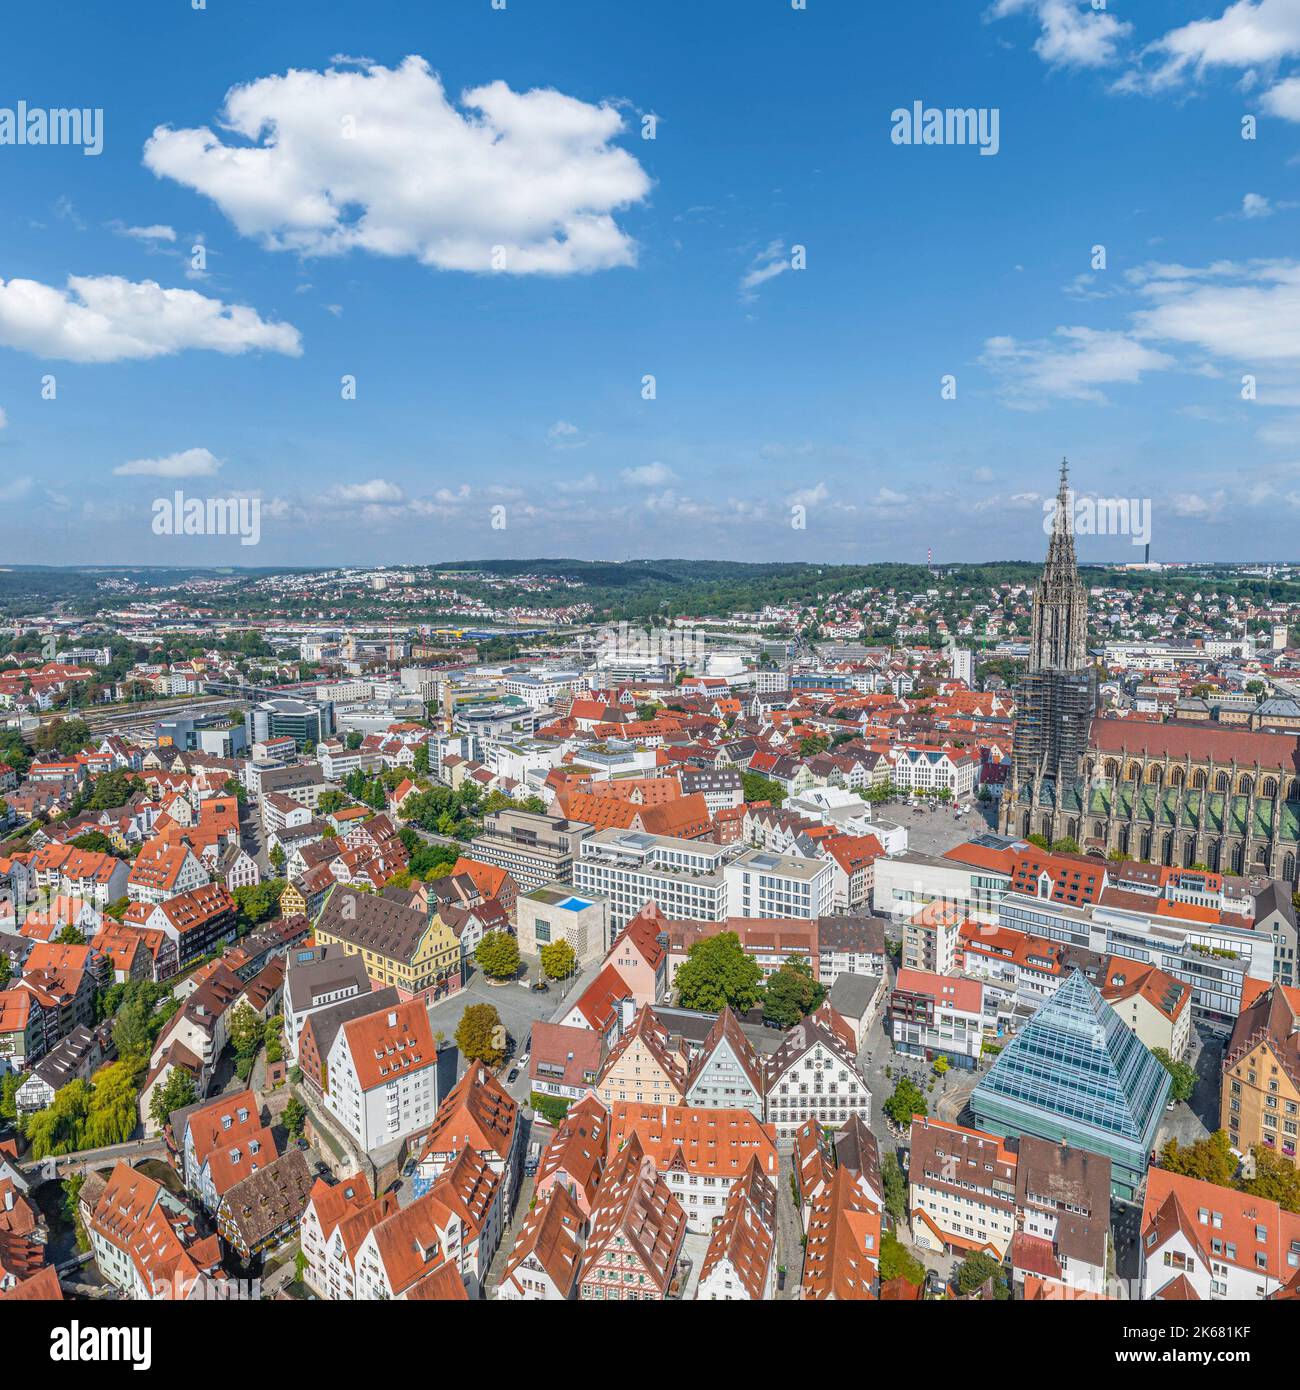 Die Stadt Ulm mit ihrem berühmten Ulmer Münster von oben Stockfoto